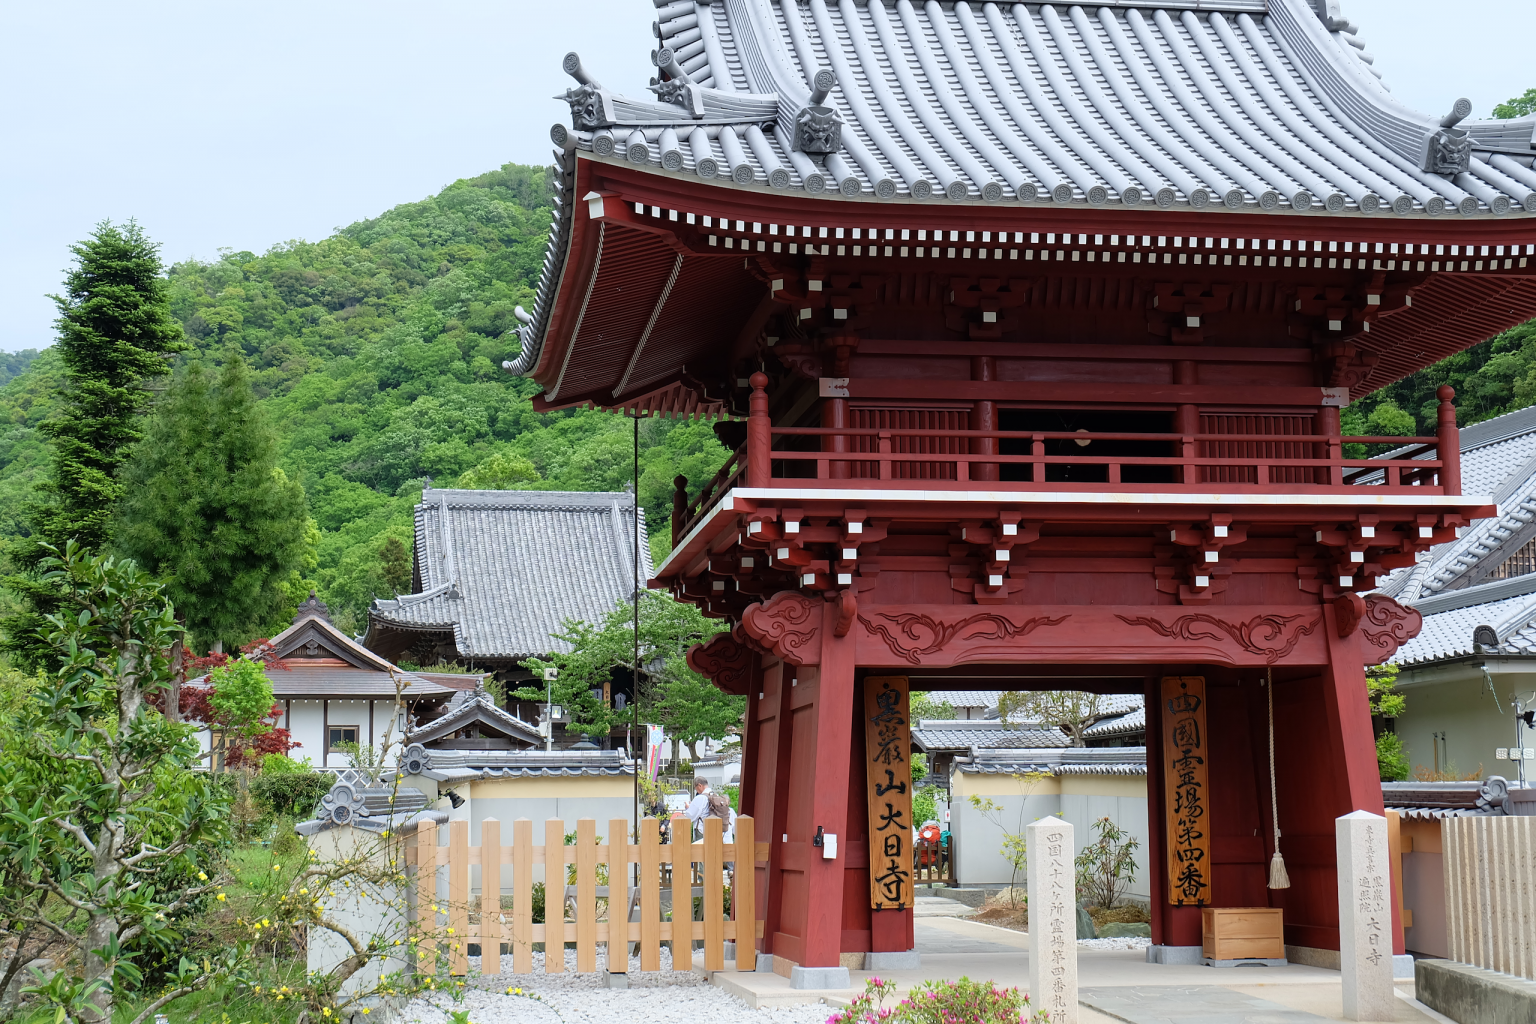 Kokuganzan Dainichi-ji